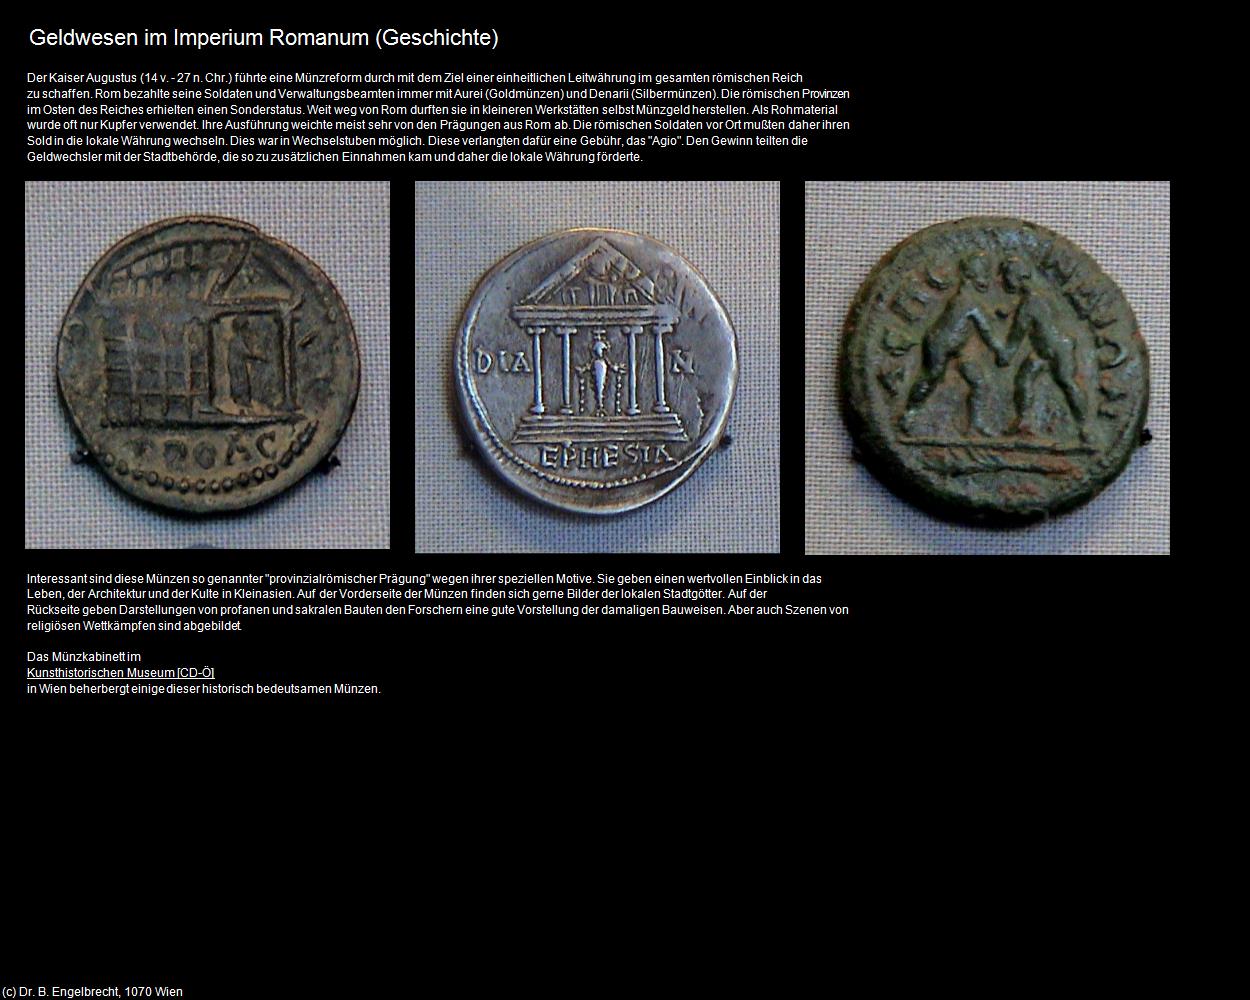 Geldwesen im Imperium Romanum (Türkei-Geschichte) in TÜRKEI(c)B.Engelbrecht